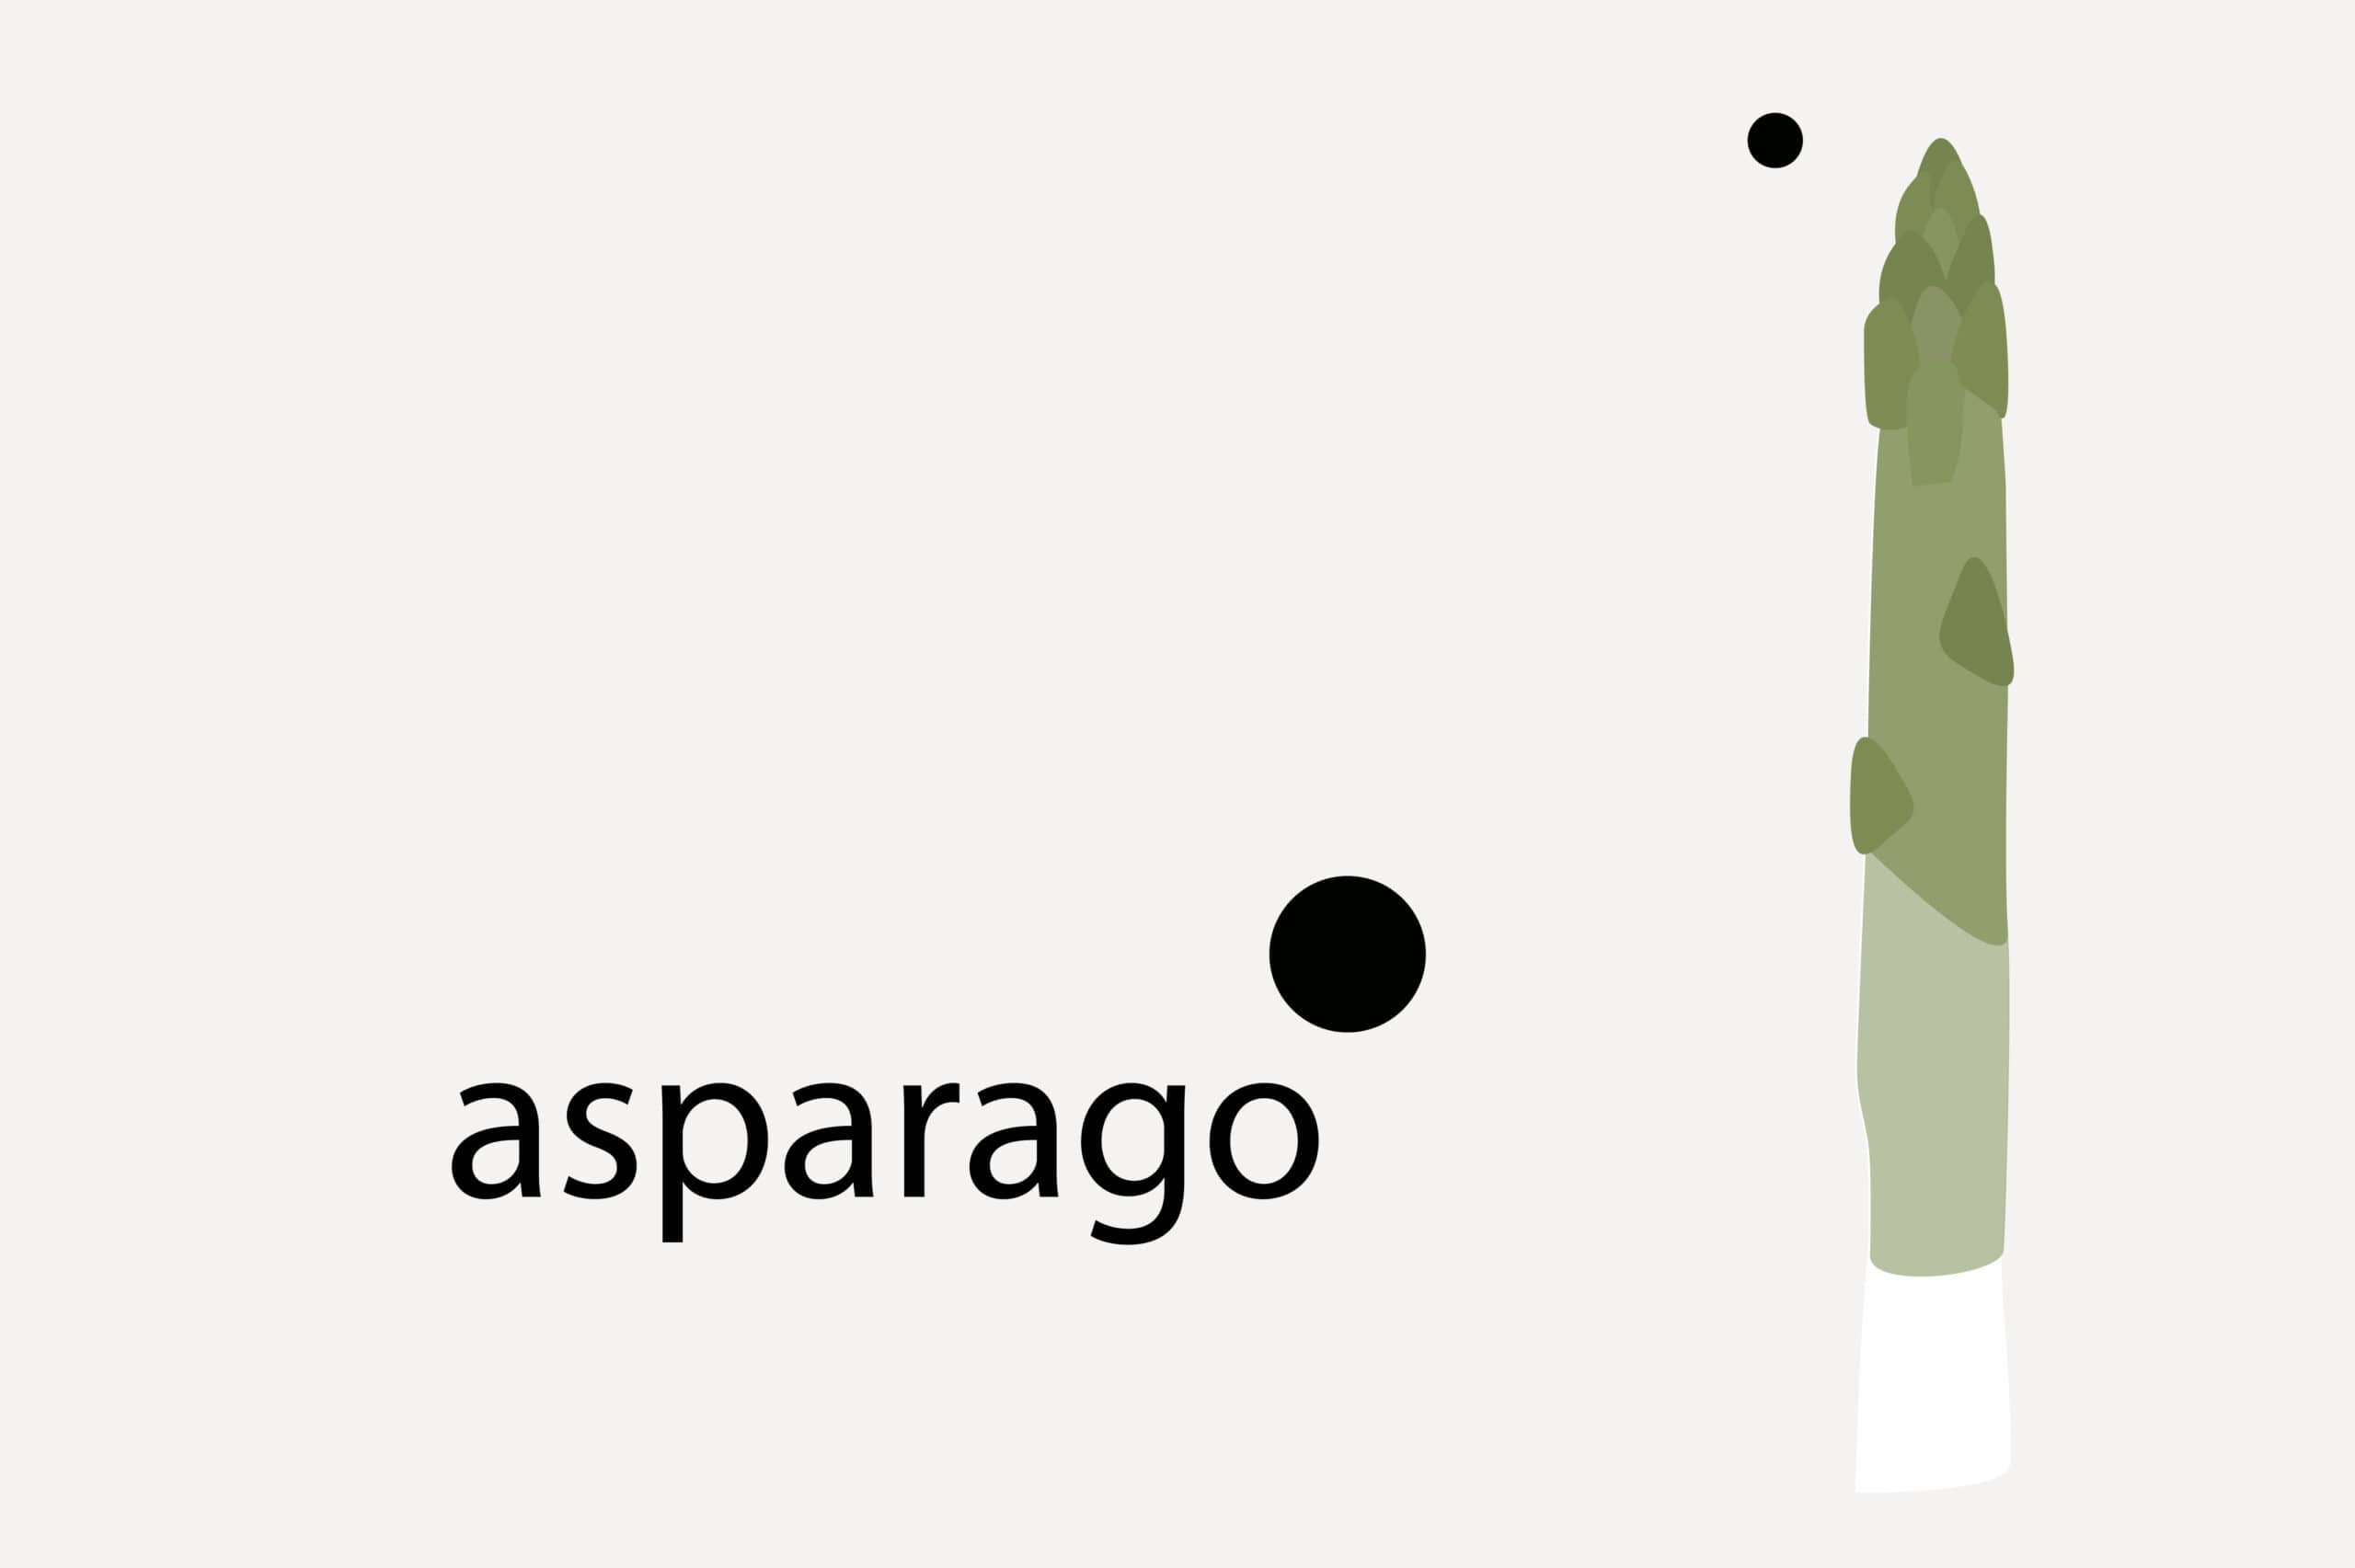 L’asparago